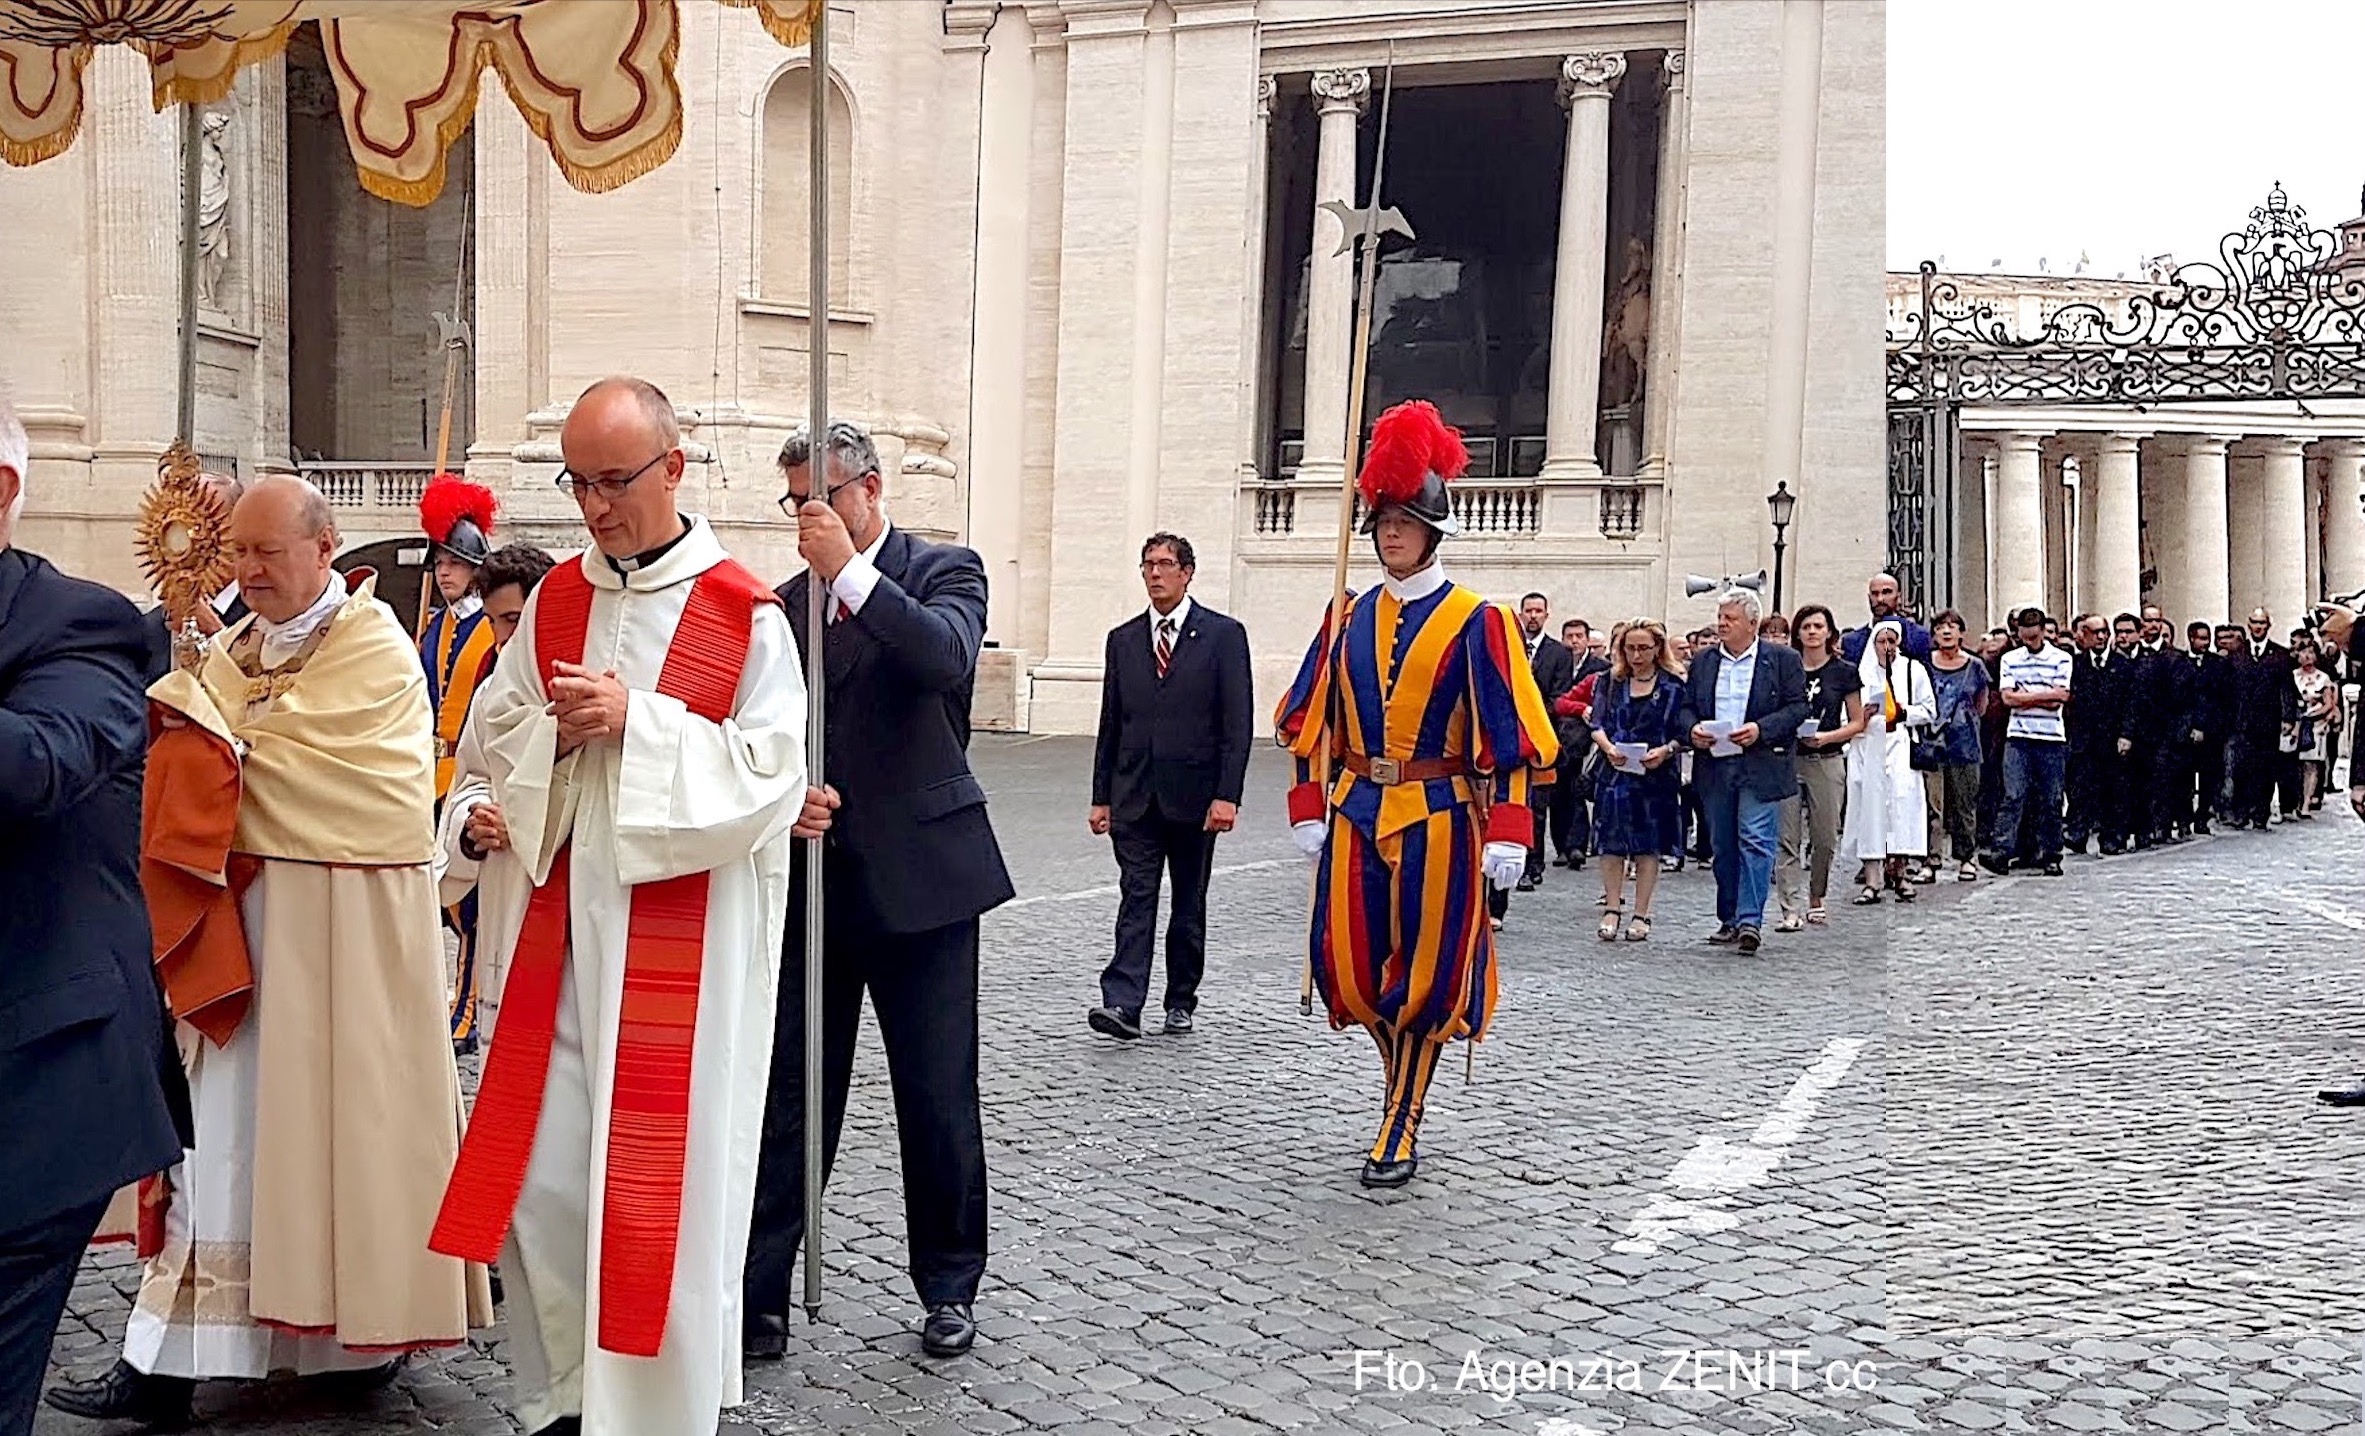 La procesión con el Santísimo Sacramento parte hacia el interior de la Ciudad del Vaticano (Foto ZENIT cc)